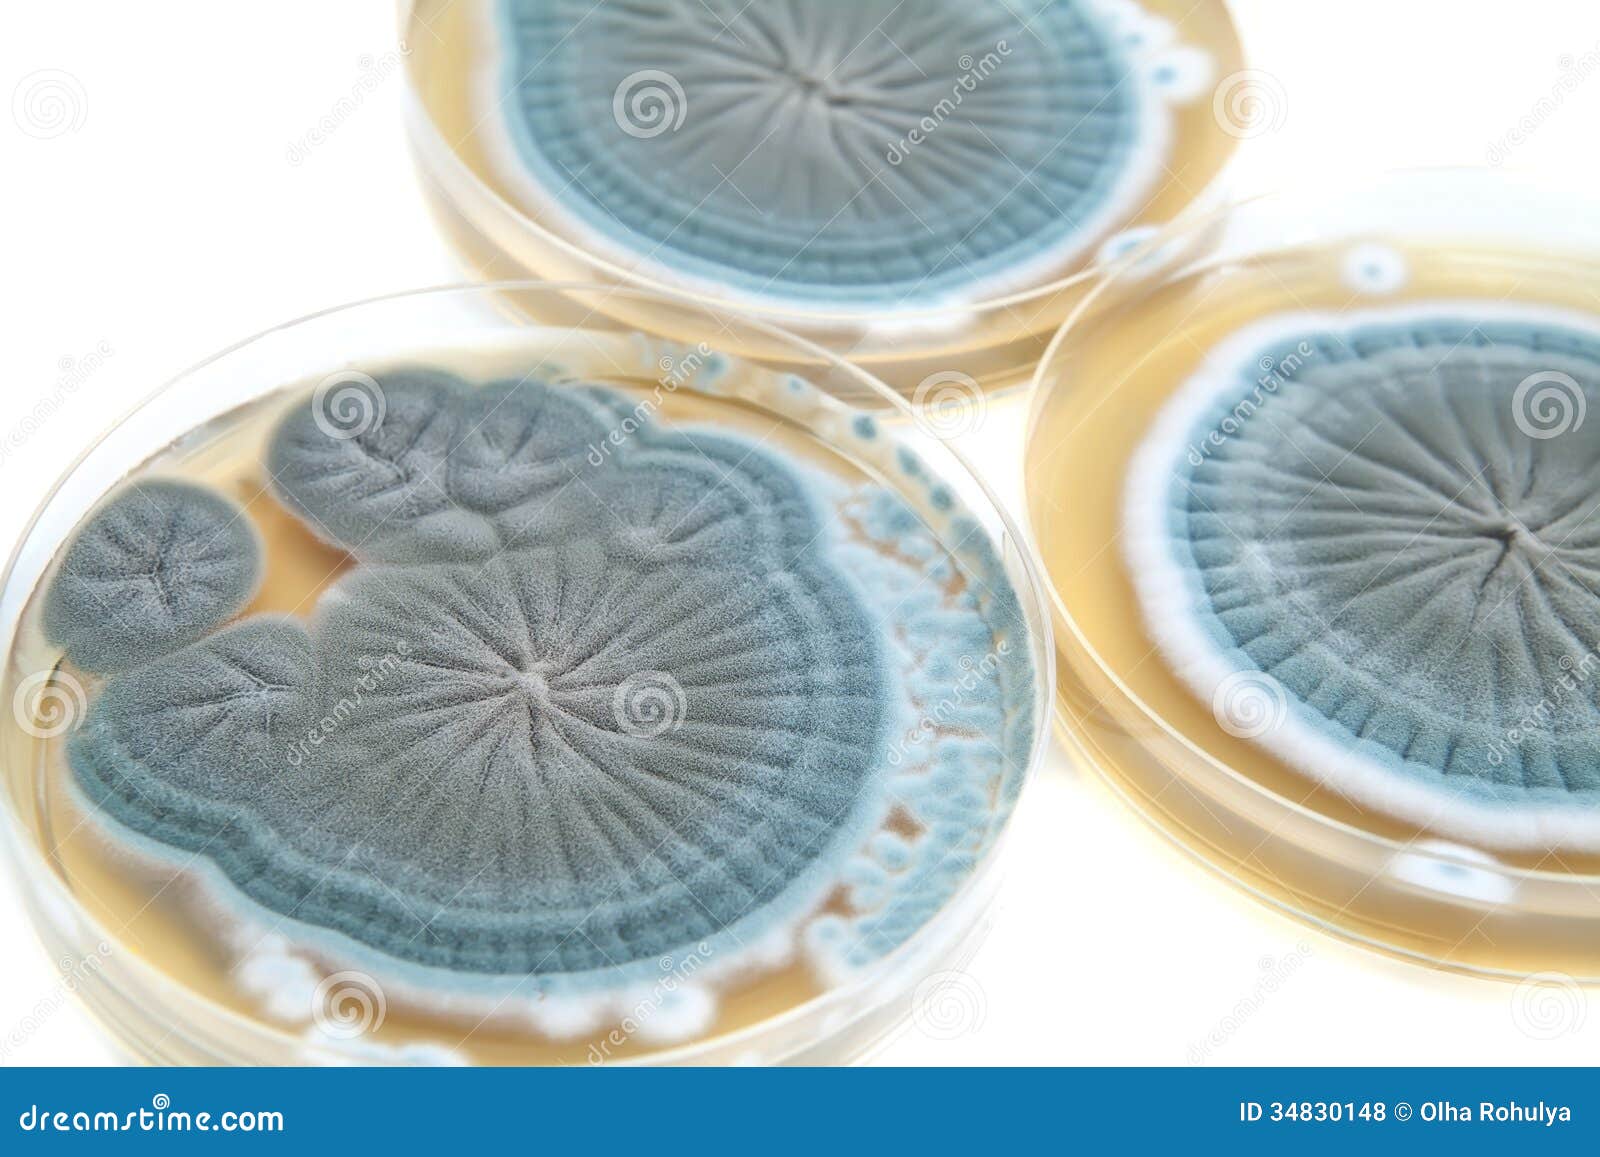 agar plates with penicillium fungi on white